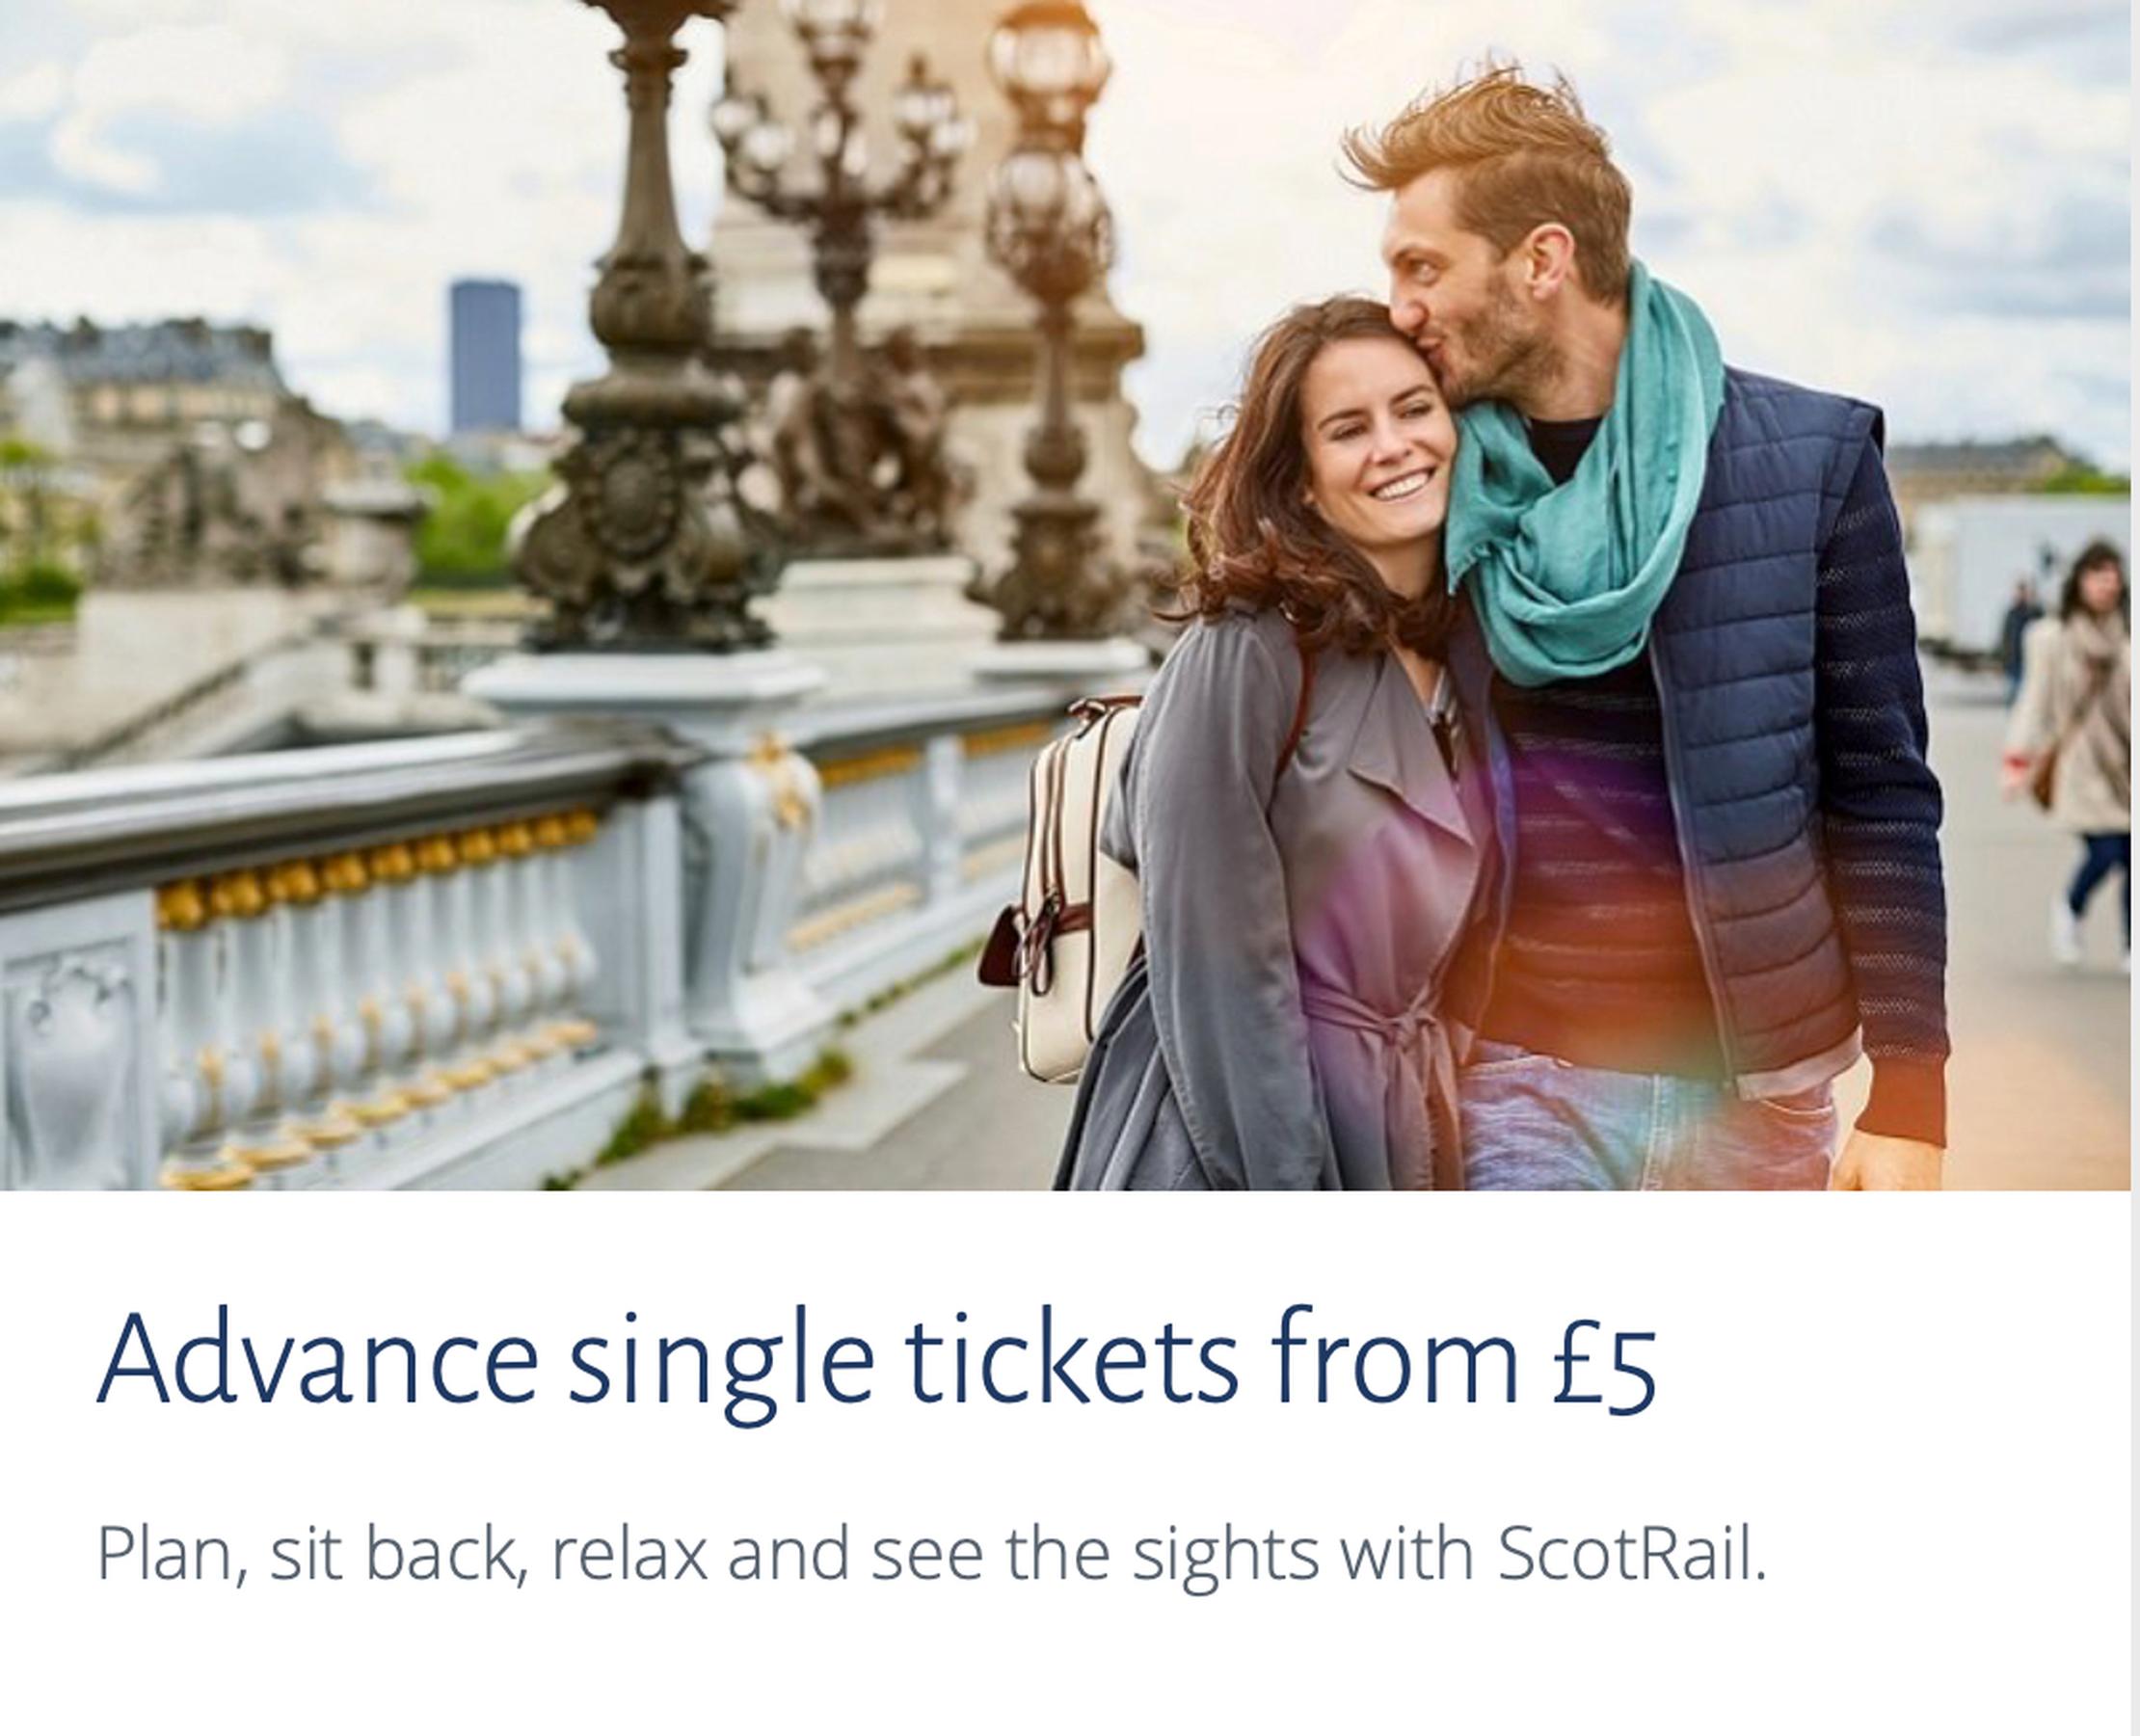 Half price rail ticket offer in Scotland